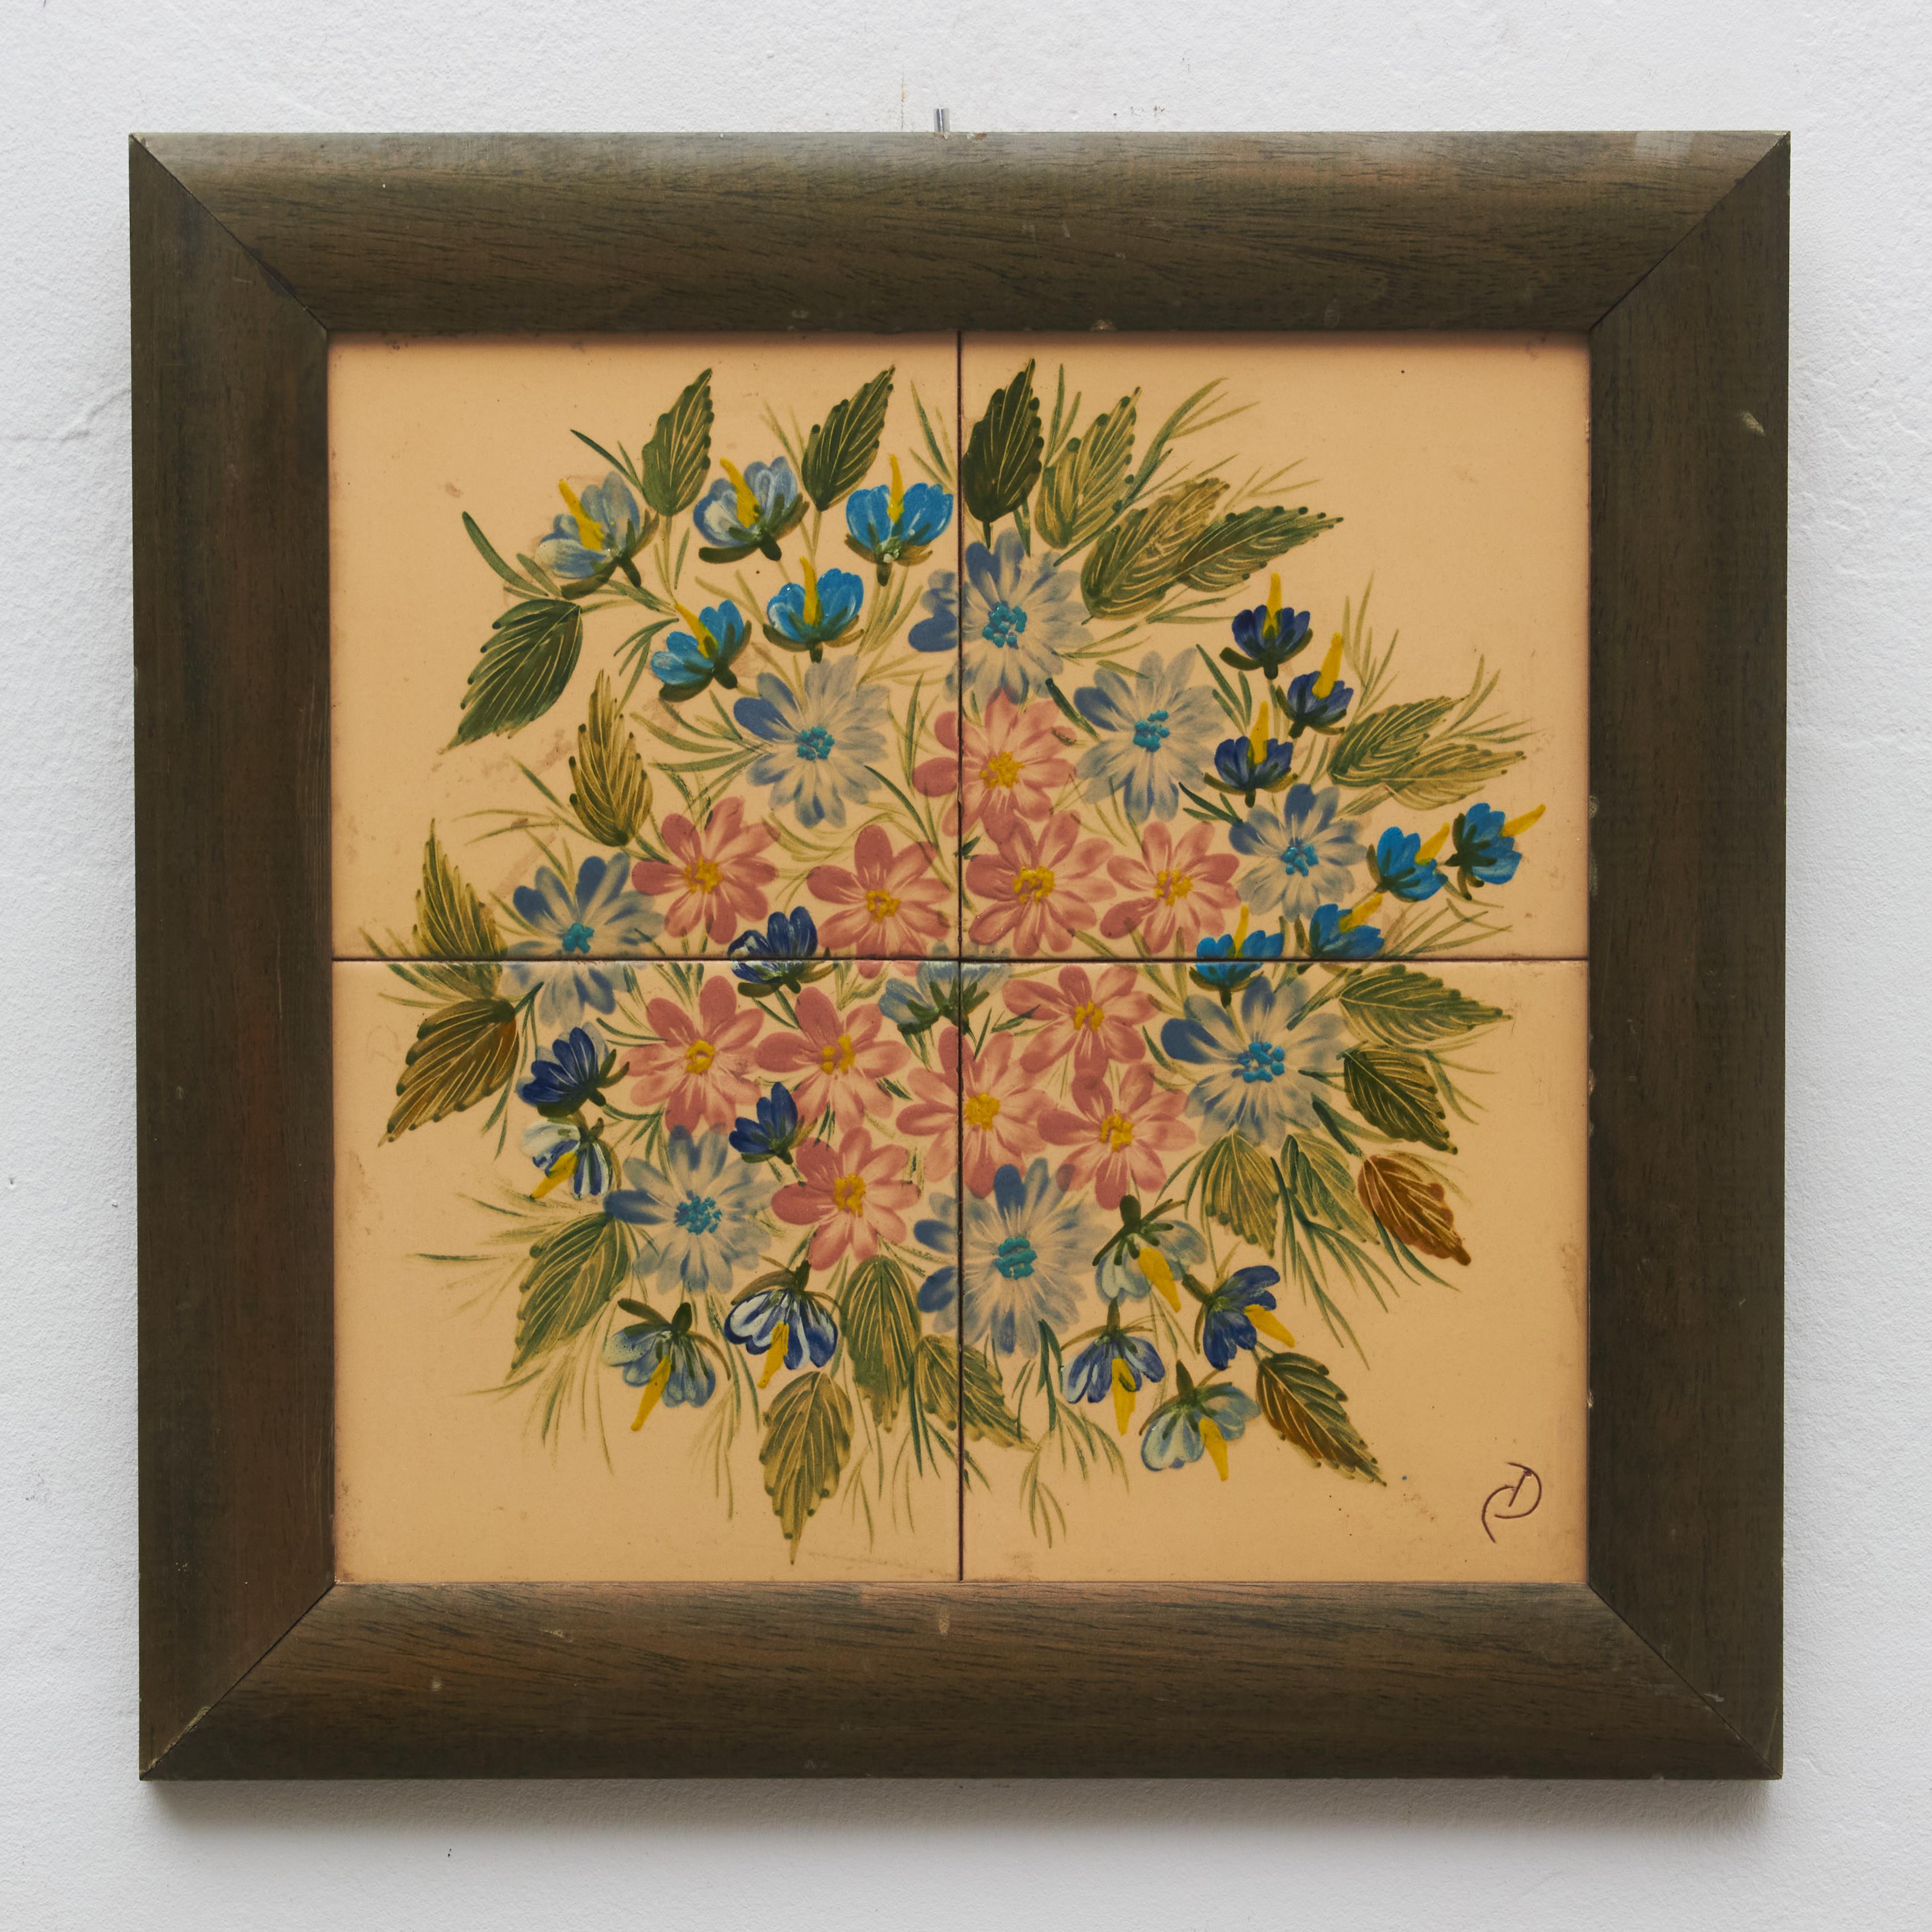 Handbemaltes Keramikbild mit Blumen des katalanischen Künstlers Diaz Costa, um 1960.
Gerahmt. Unterschrieben.

Im Originalzustand, mit geringfügigen Gebrauchsspuren, die dem Alter und dem Gebrauch entsprechen, wobei eine schöne Patina erhalten